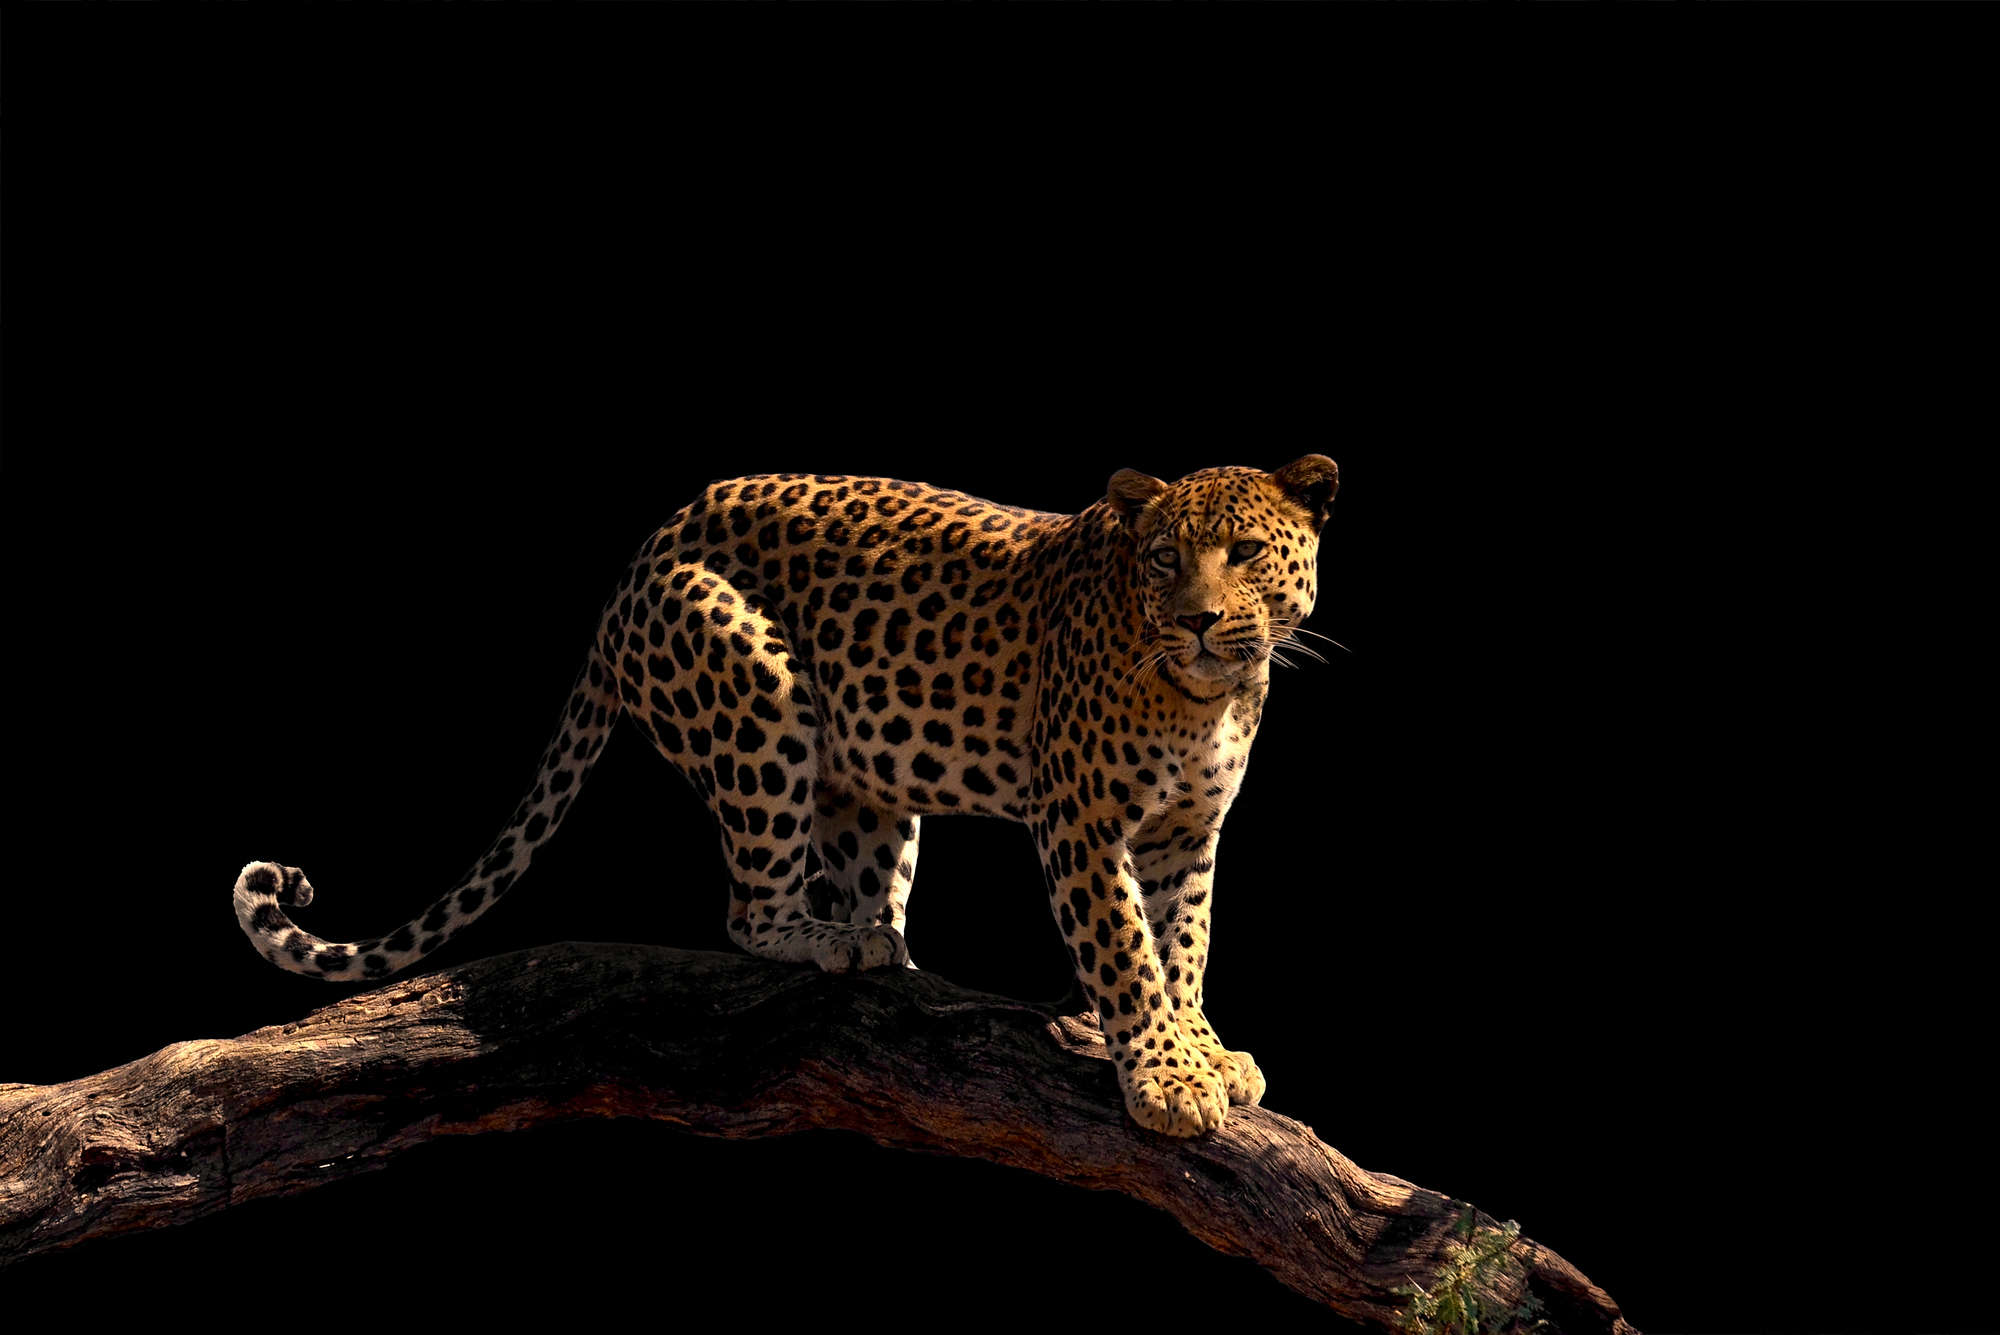             Papier peint panoramique léopard debout sur une branche sur intissé lisse mat
        